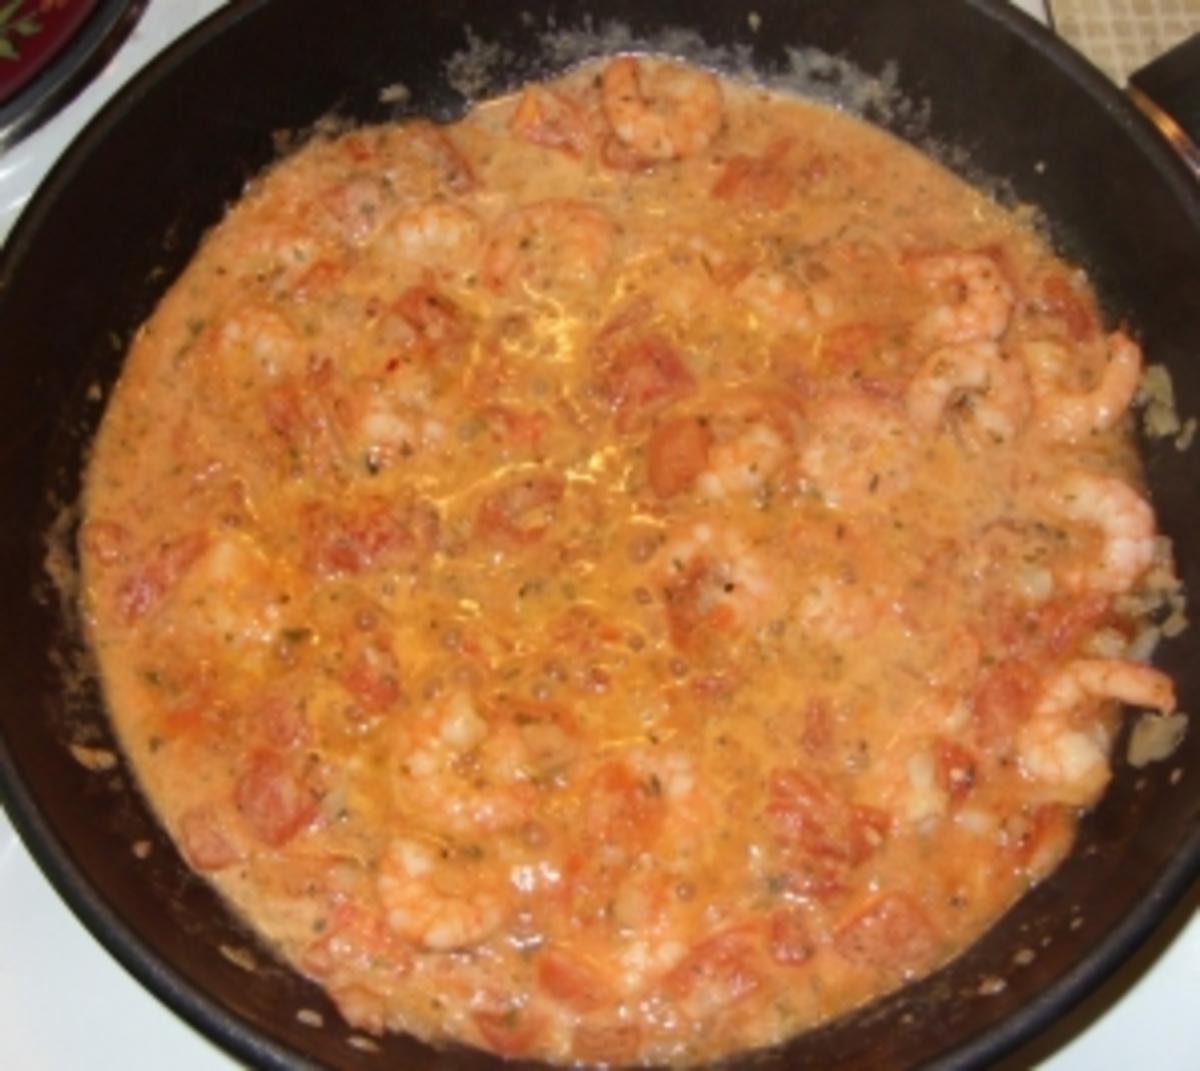 Spaghettitürmchen mit Rießengarnelen auf Tomaten-Sahnesugo - Rezept - Bild Nr. 6